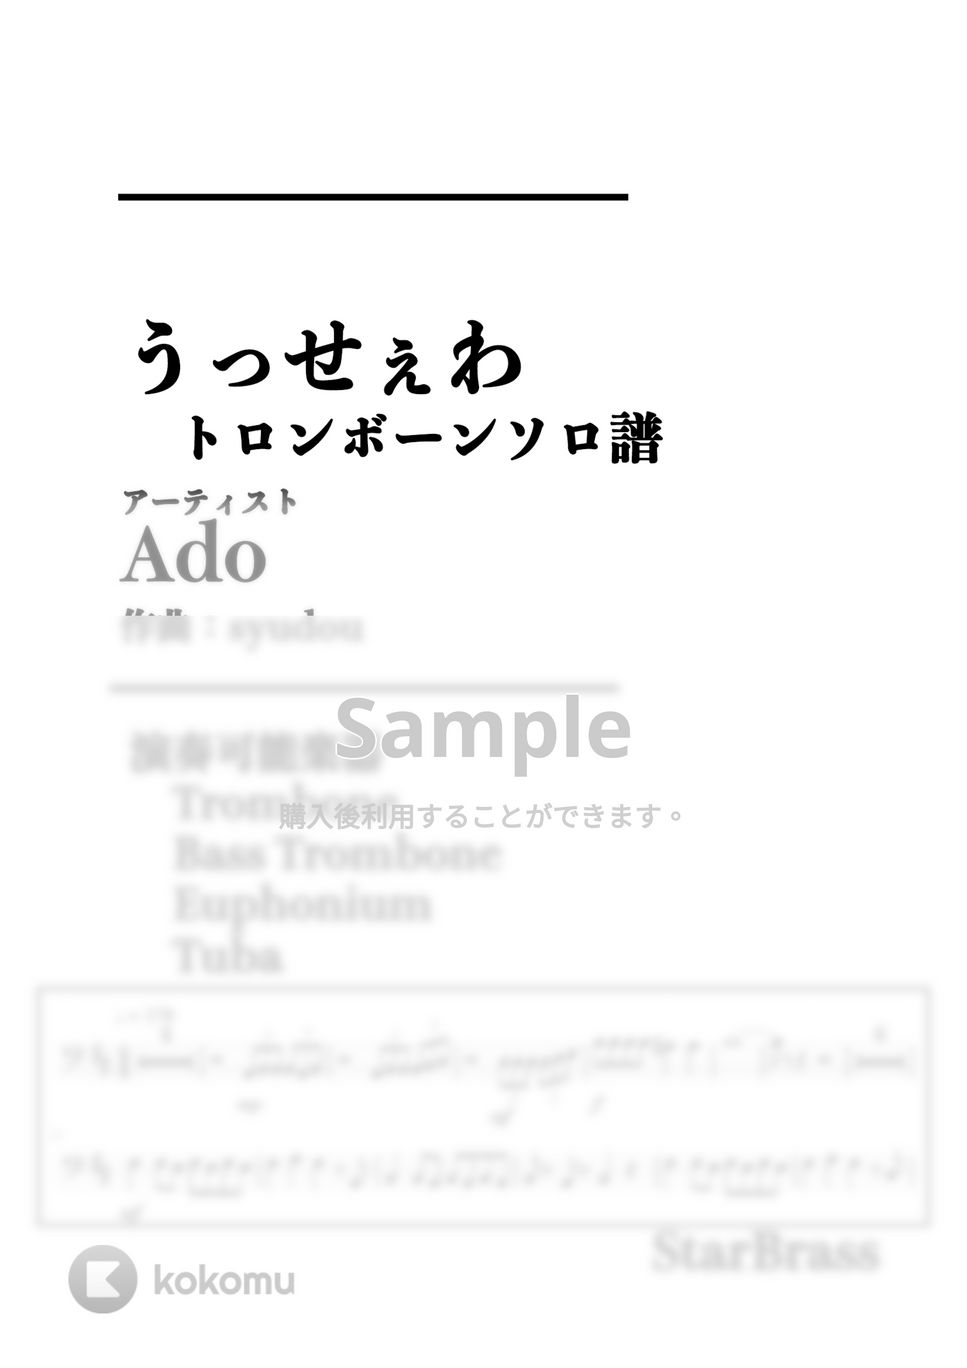 Ado - うっせぇわ (トロンボーン / ユーフォニアム / チューバ) by Creampuff